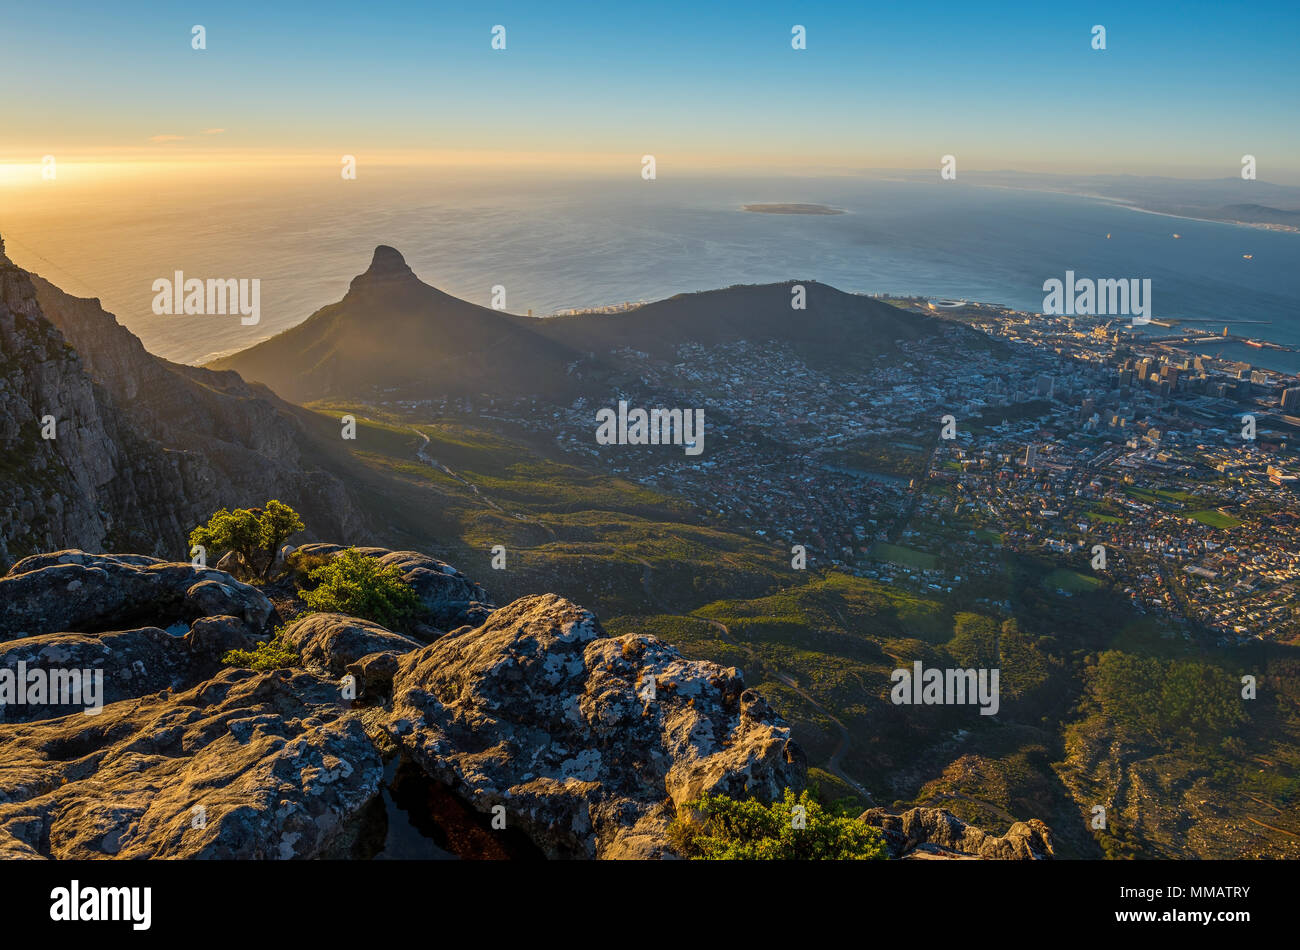 Coucher du soleil avec vue aérienne sur la ville du Cap et son paysage urbain et de la célèbre tête de lion mountain peak vu de la Table Mountain, Afrique du Sud. Banque D'Images